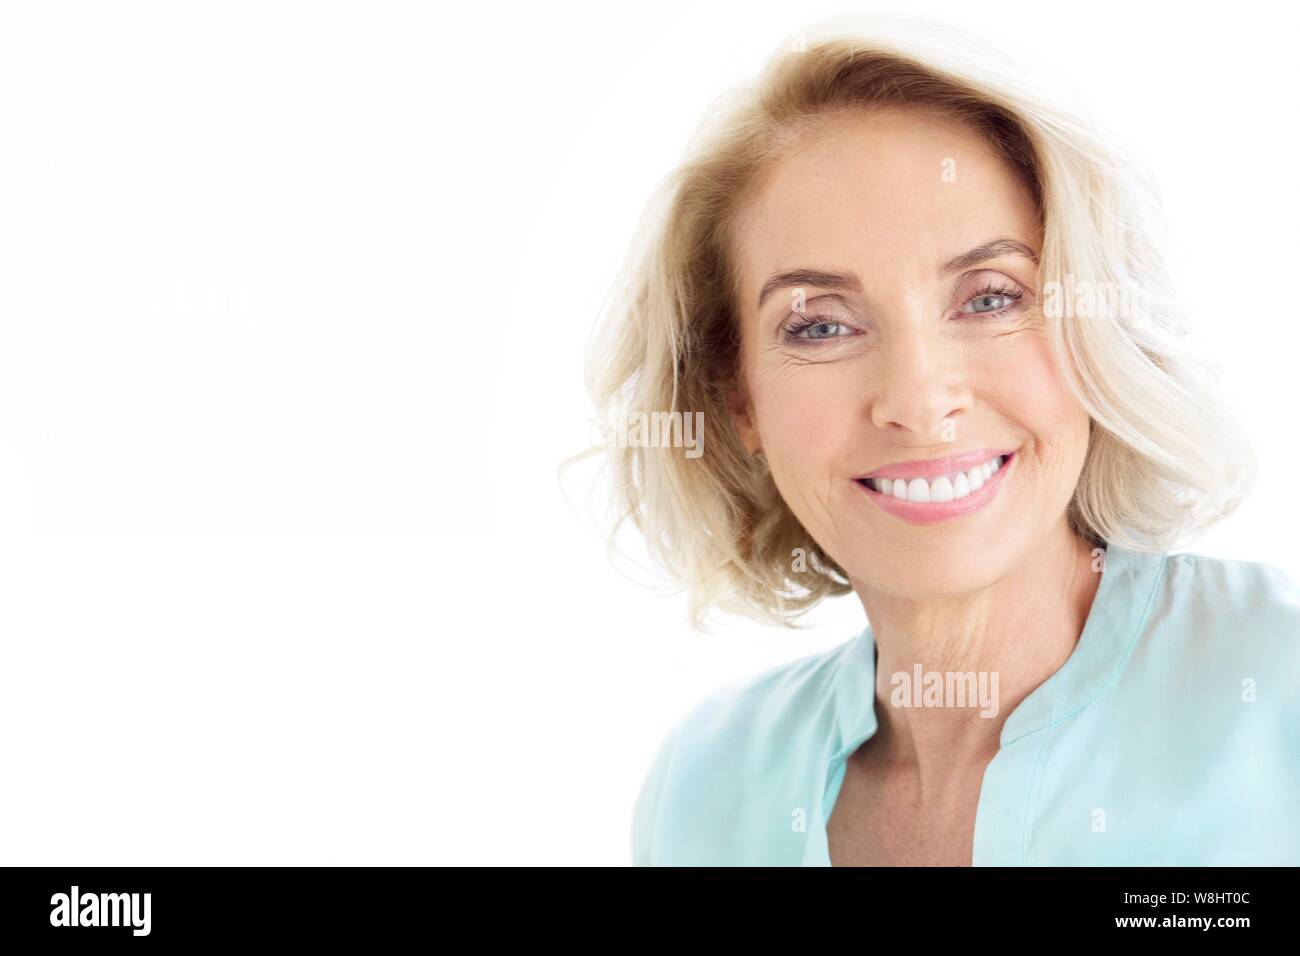 Mature woman smiling towards camera. Stock Photo